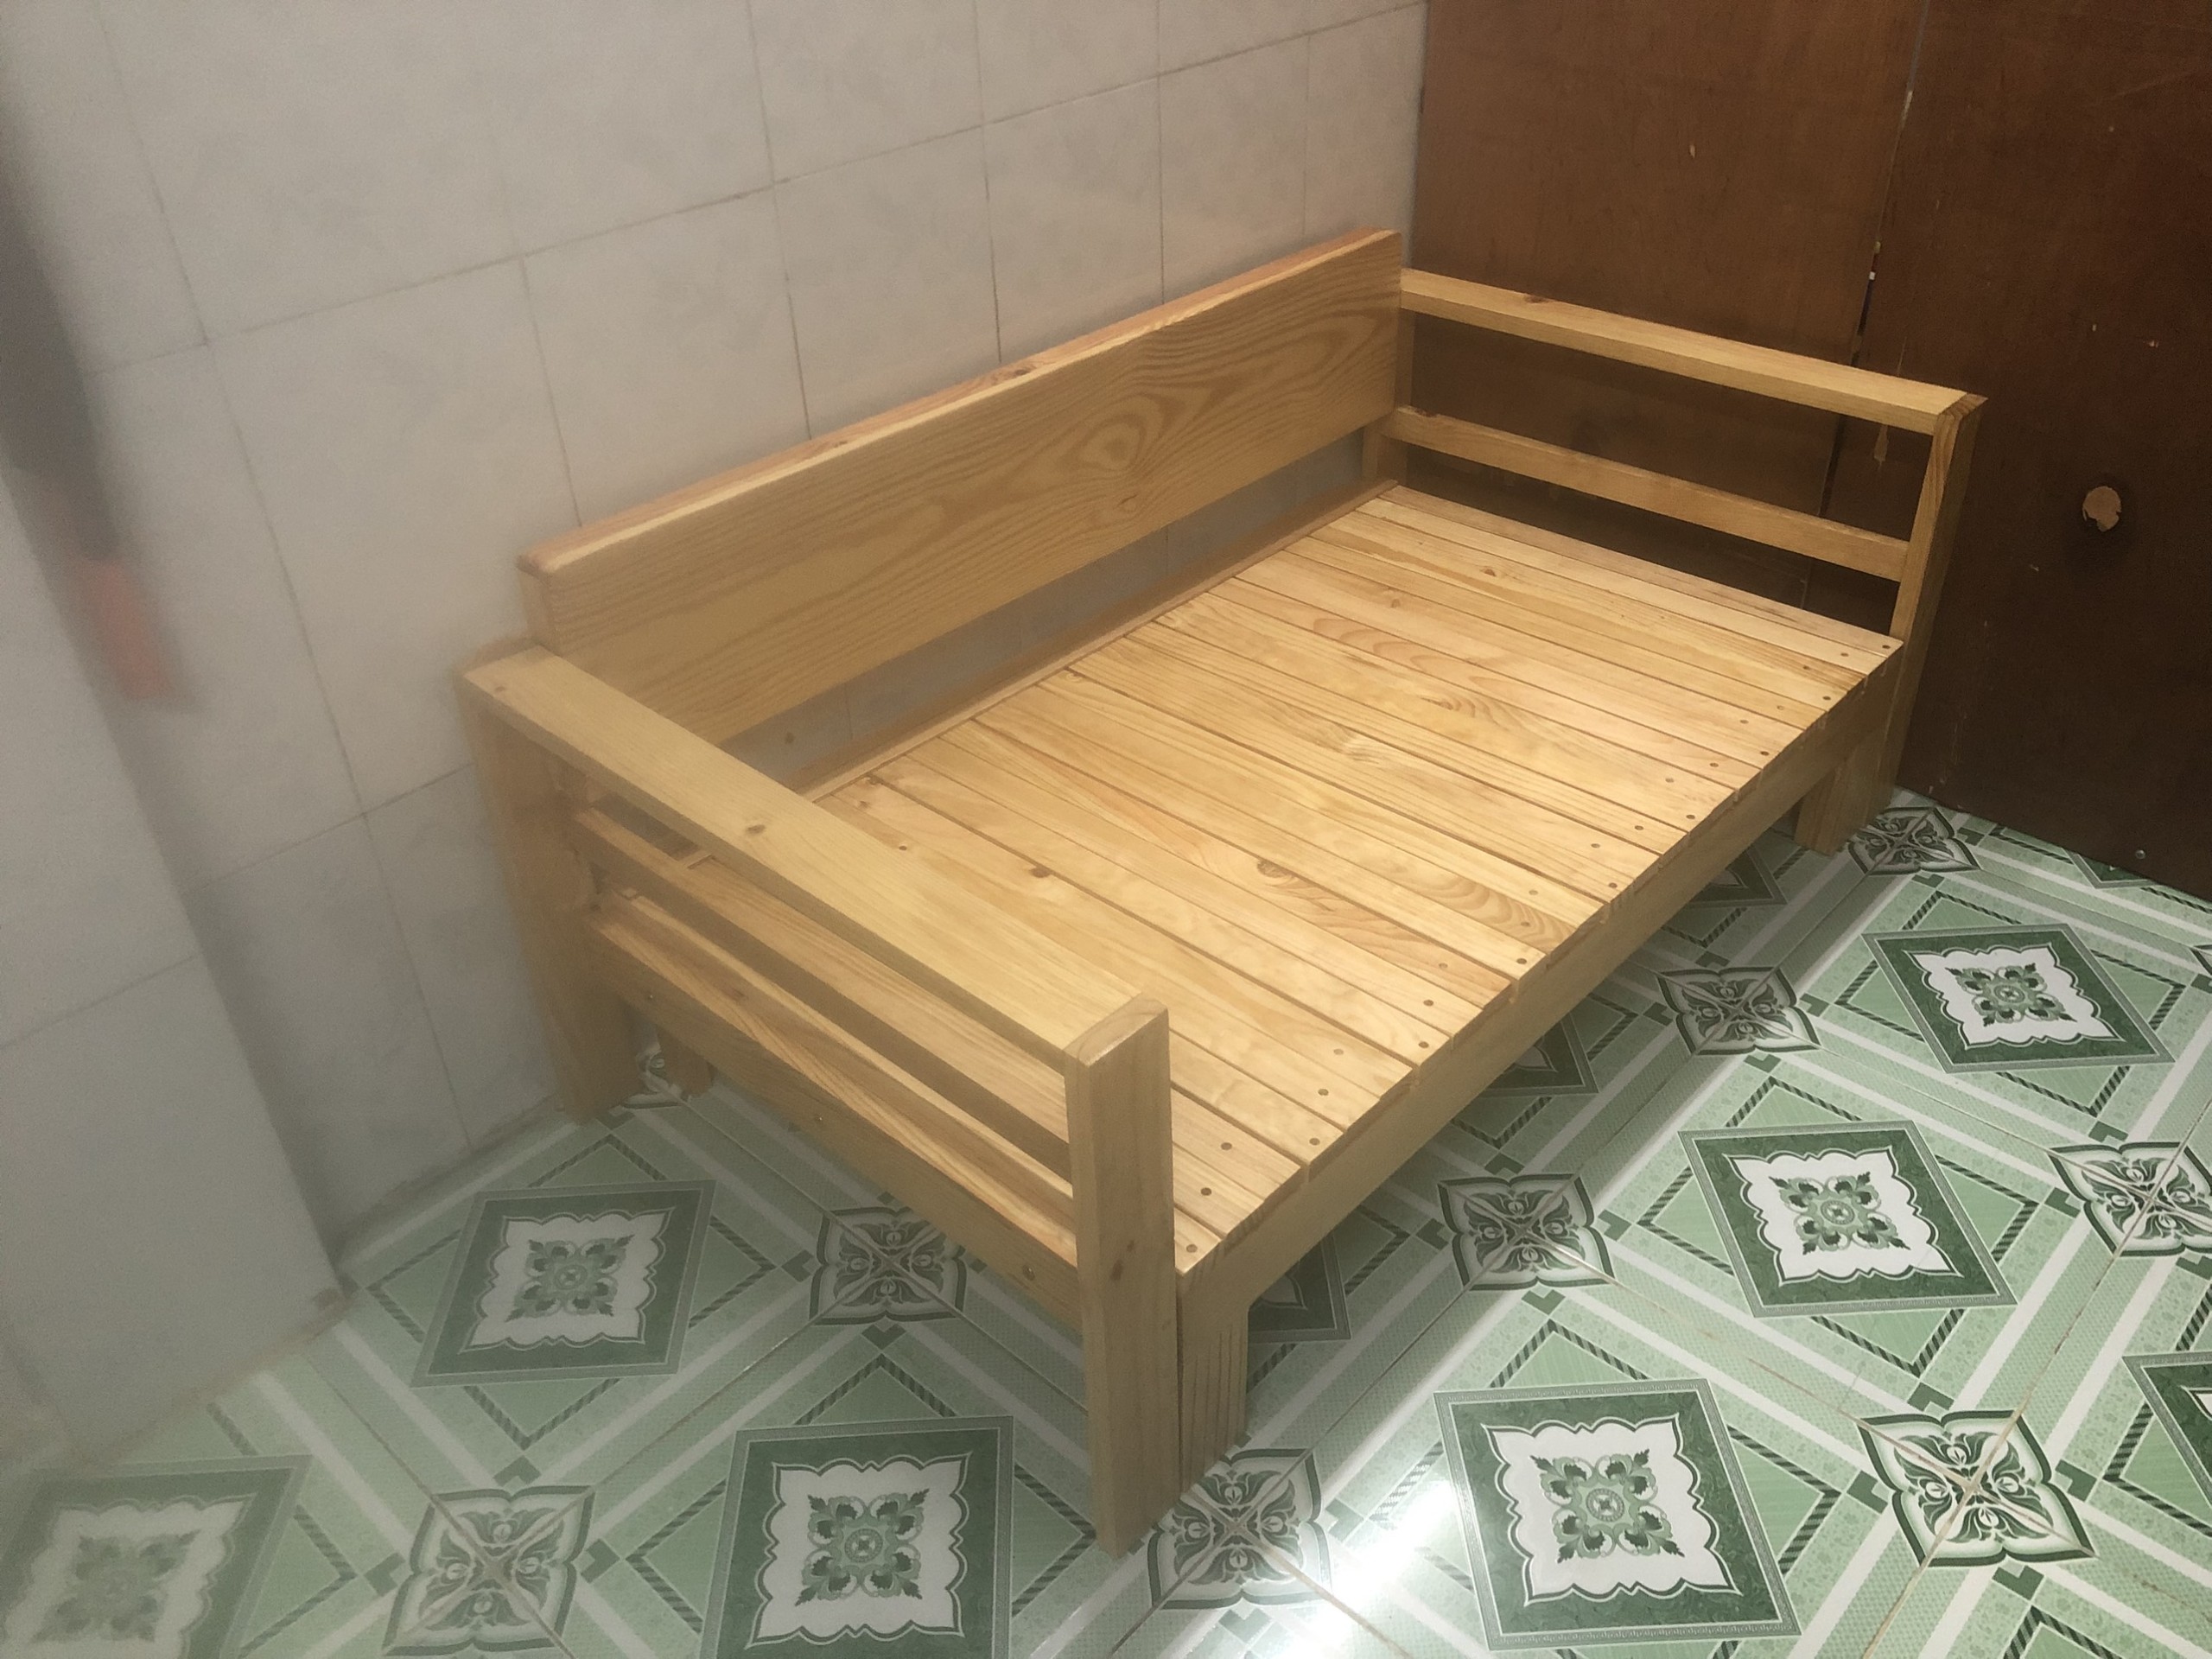 Ghế sofa giường gỗ tư nhiện, hiện đại phù hợp không gian nhỏ